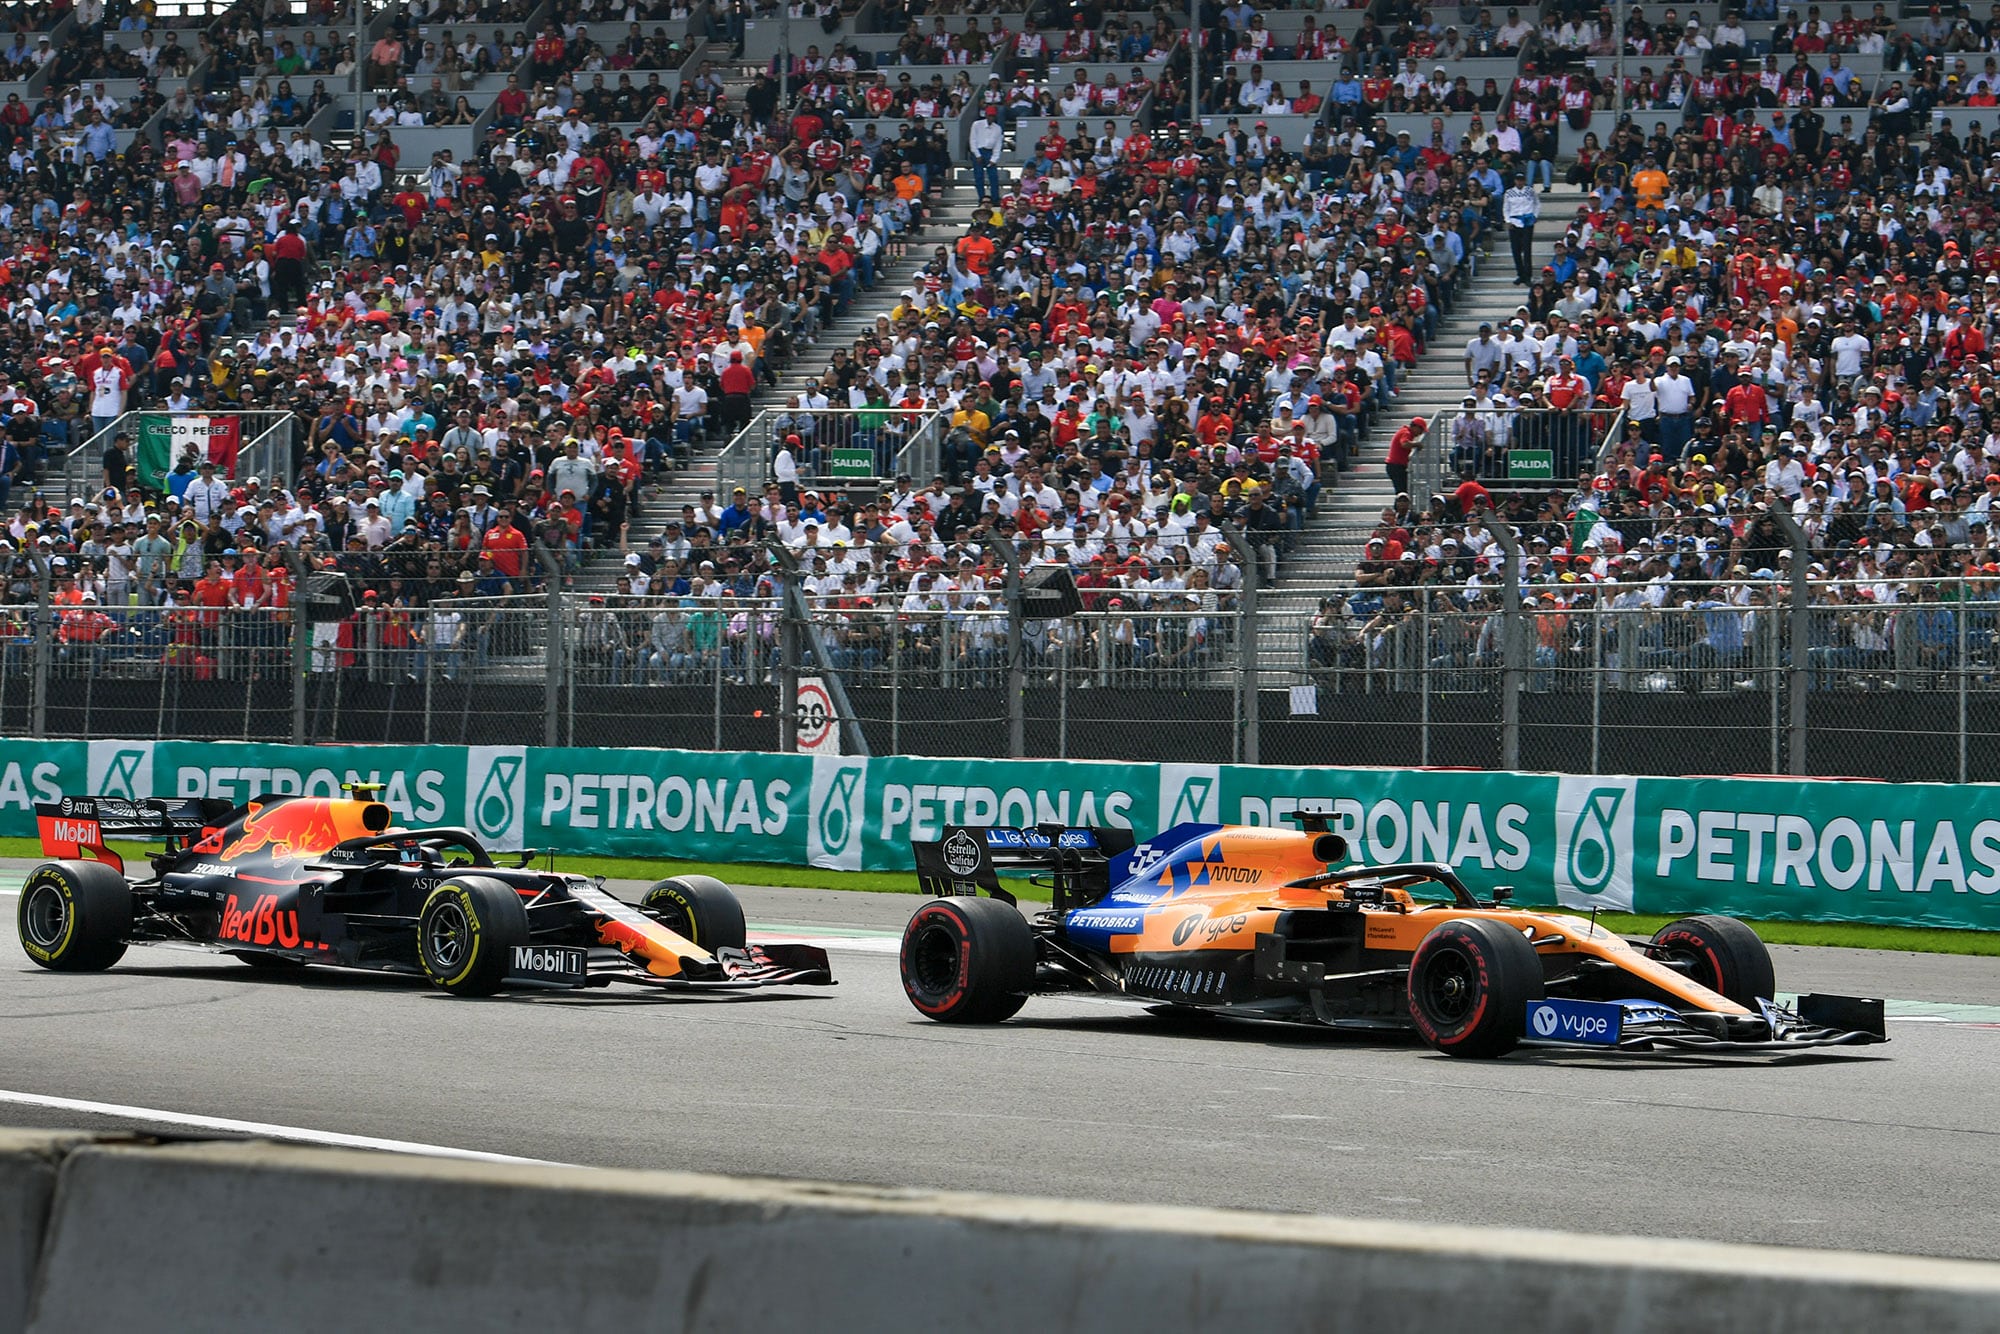 Alex Albon follows Carlos Sainz at the 2019 F1 Mexican Grand Prix